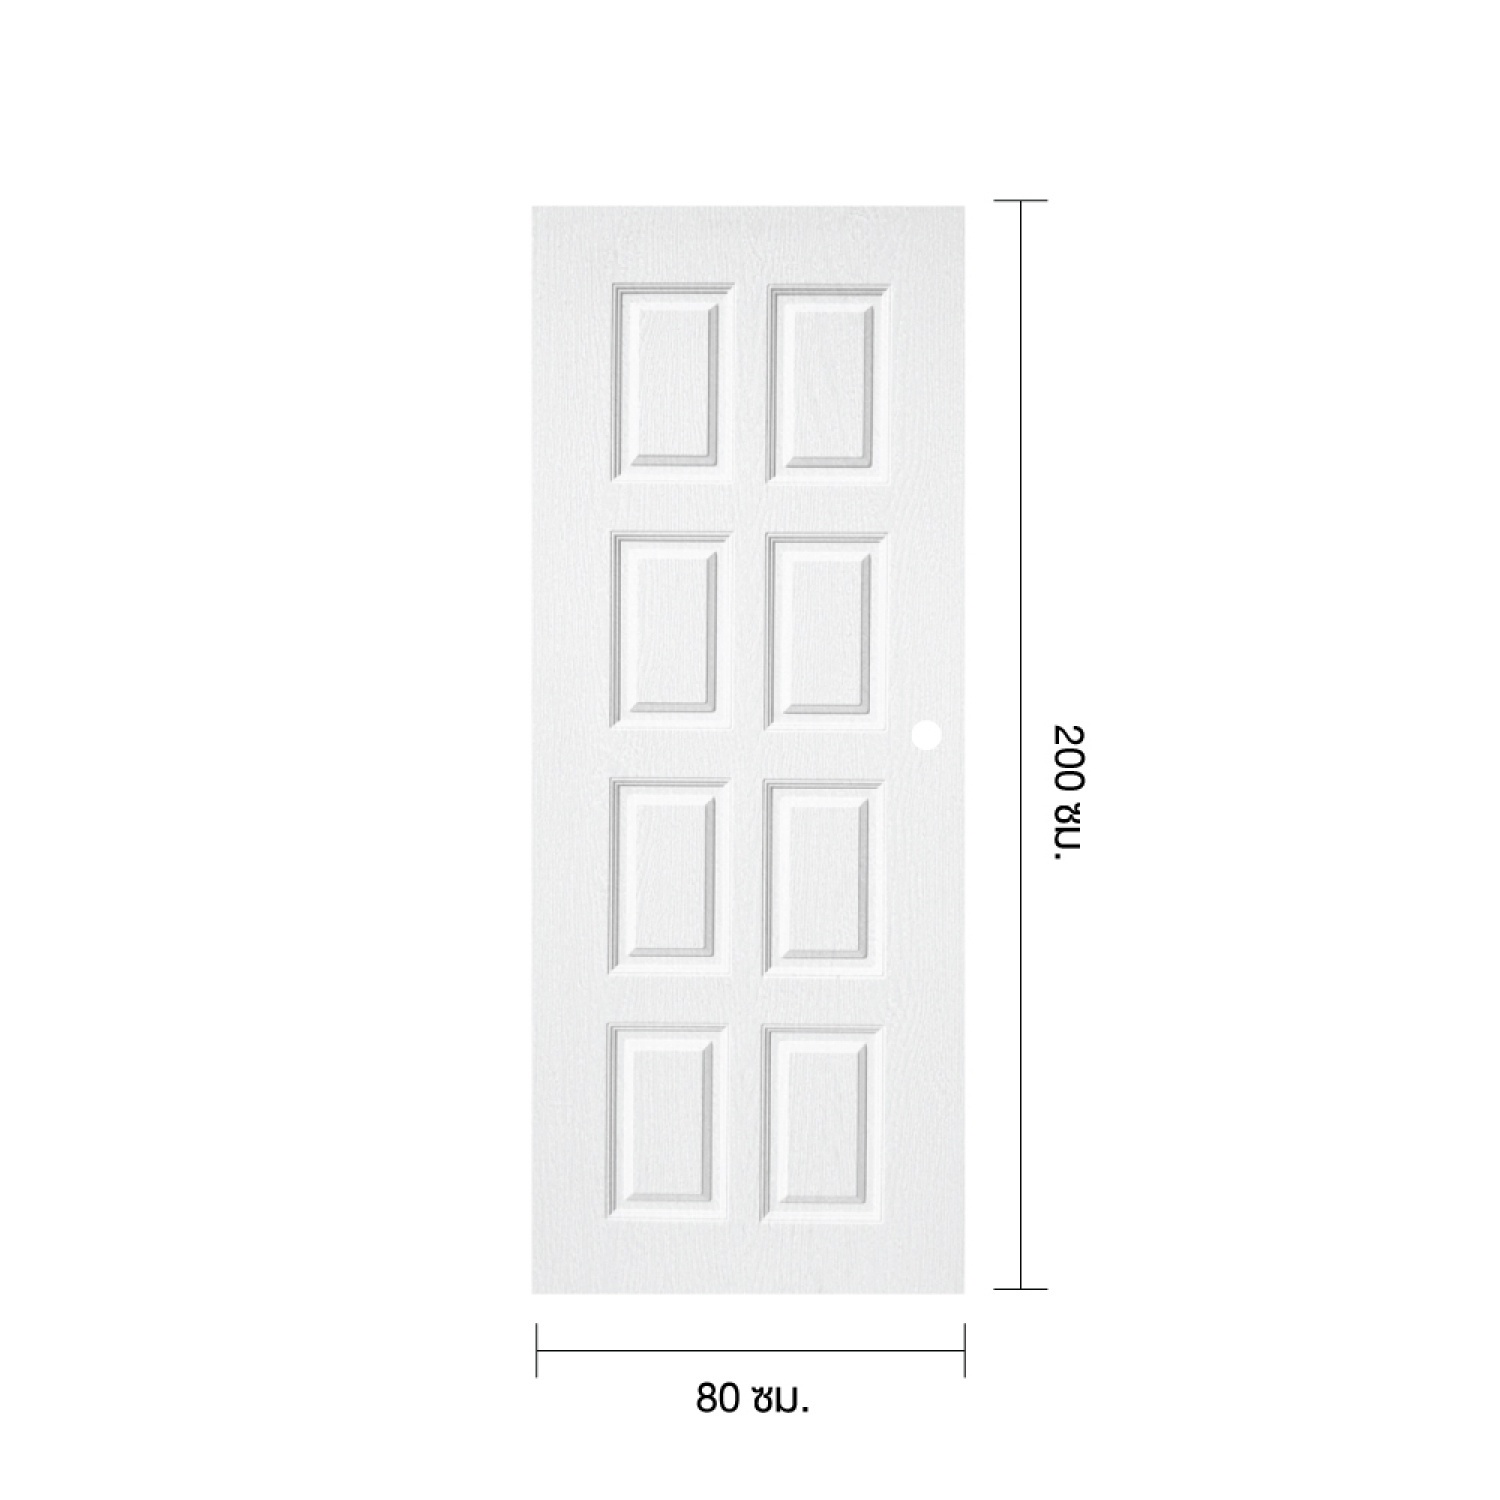 WELLINGTAN ประตูยูพีวีซีบานทึบ 8ฟัก REVO WNR003 80x180ซม. สีขาว (เจาะรูลูกบิด) 